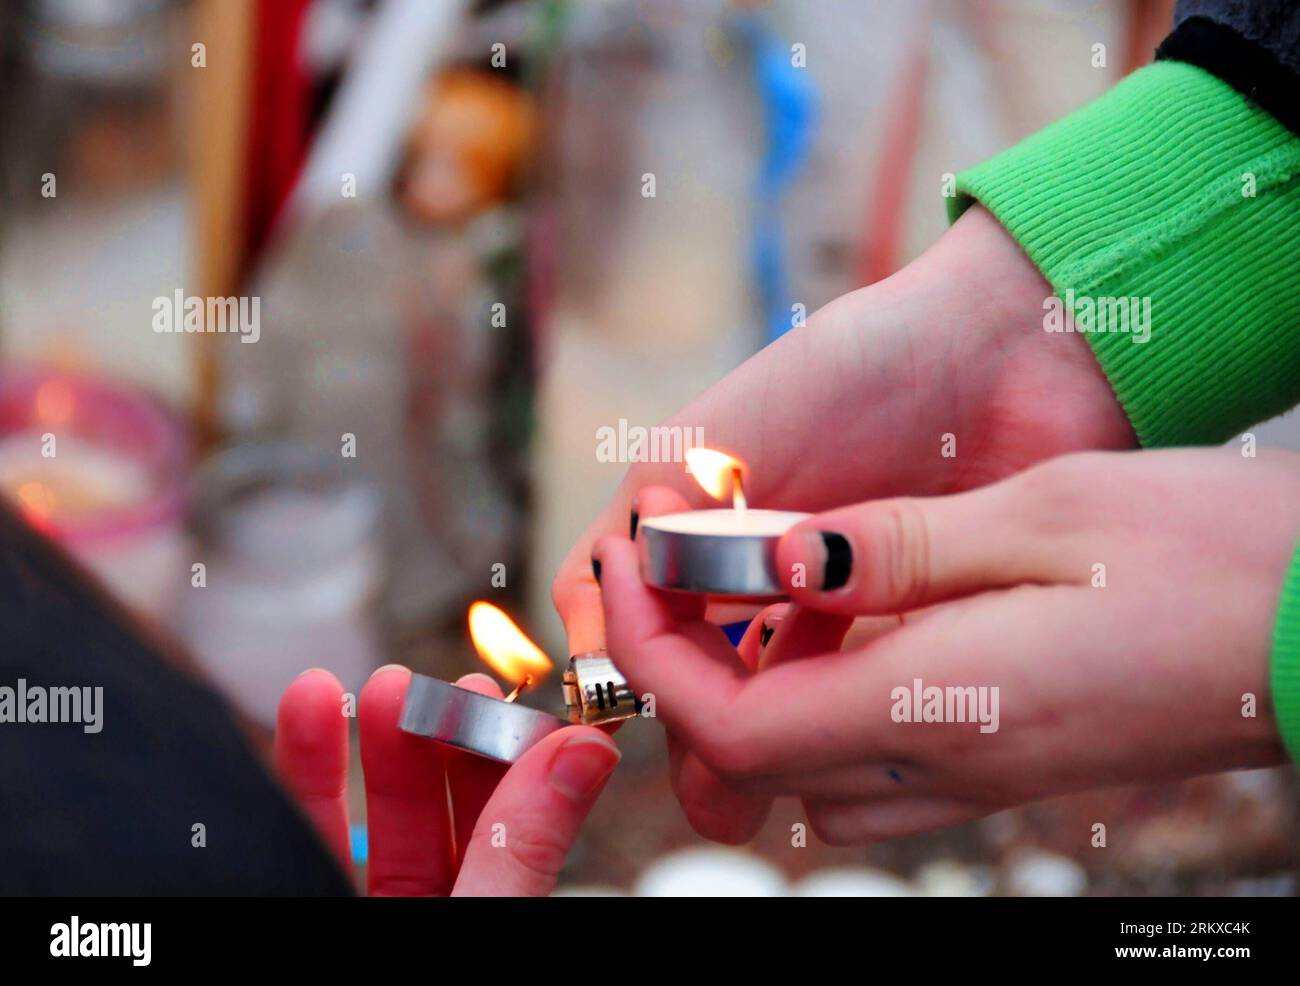 Bildnummer: 58940619 Datum: 20.12.2012 Copyright: imago/Xinhua NEWTOWN, 20. Dezember 2012 - Kerzen bei einer provisorischen Gedenkstätte in Newtown, Connecticut. Dezember 2012. Weiterhin trauern wir um die Ermordung von 20 Schülern und 6 Erwachsenen durch den mutmaßlichen Schützen Adam Lanza an der Sandy Hook Elementary School am 14. Dezember. (Xinhua/Zhang Chuanshi)(ctt) U.S.-NEWTOWN-SCHOOL-SHOOTING-CONDOLENCE PUBLICATIONxNOTxINxCHN Gesellschaft USA Amok Amoklauf Massaker Schule Schulmassaker Trauer Gedenken Anteilnahme x0x xrj 2012 quer 58940619 Datum 20 12 2012 Copyright Imago XINHUA Newtown DEC 20 2012 Lichtkerzen BEI einem Makeshi Stockfoto